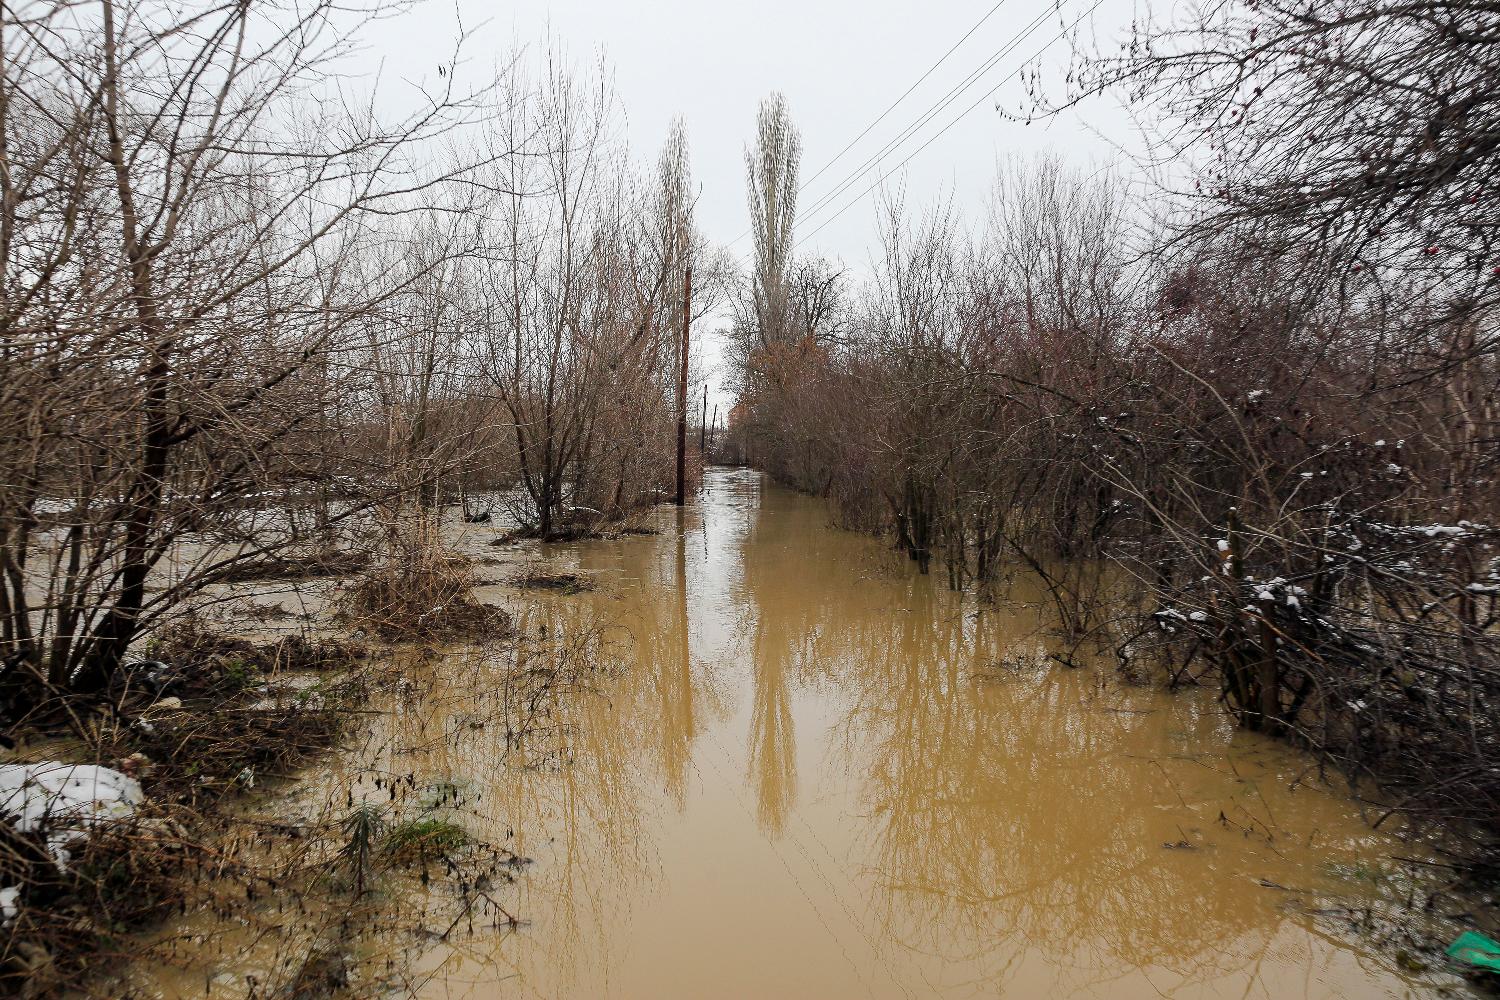 Vanredna situacija u više opština na jugu, evakuisane 34 osobe iz poplavljenih područja (FOTO) 6